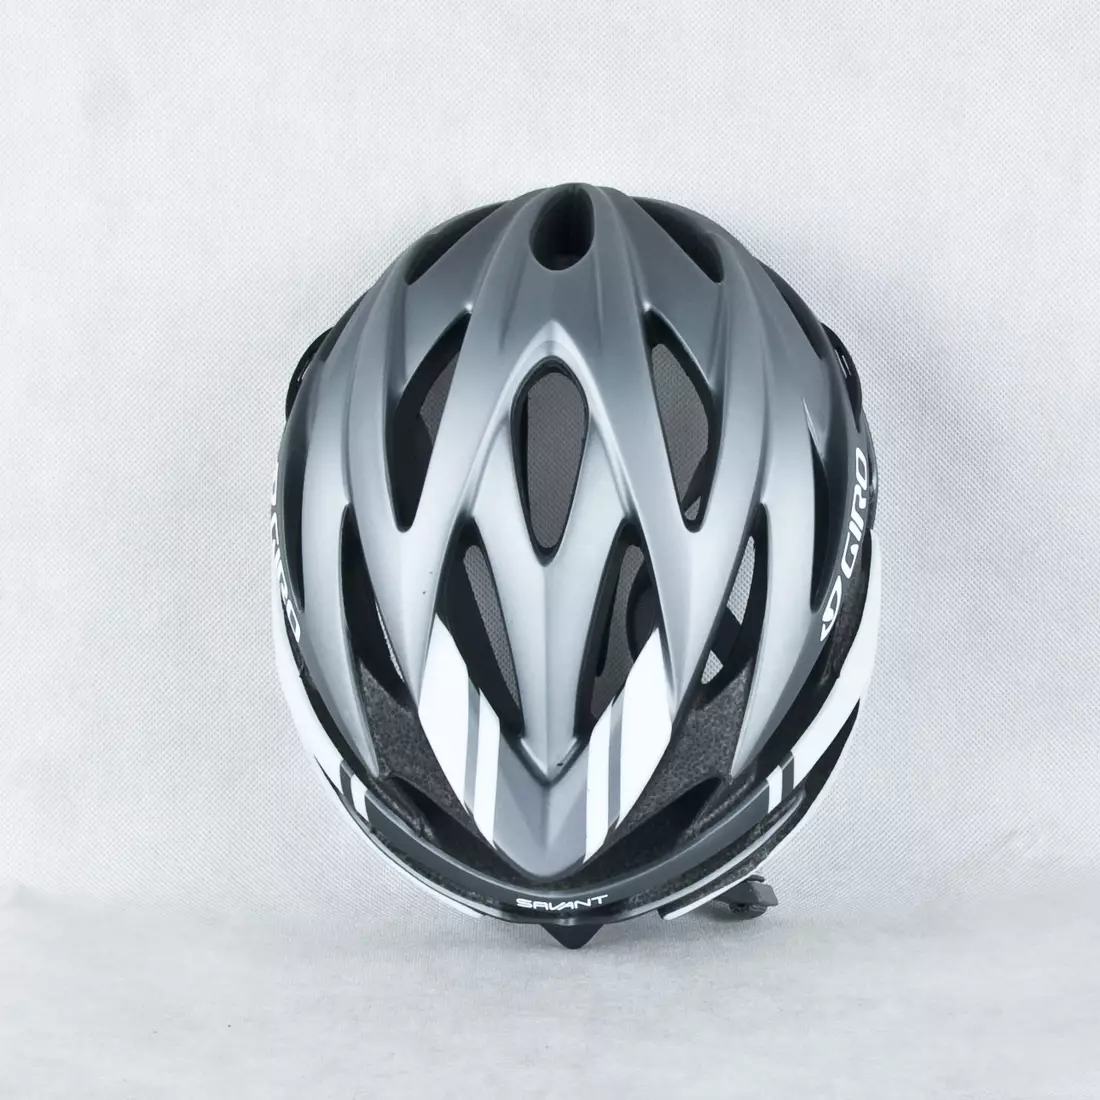 GIRO SAVANT - cască de bicicletă din titan și alb mat